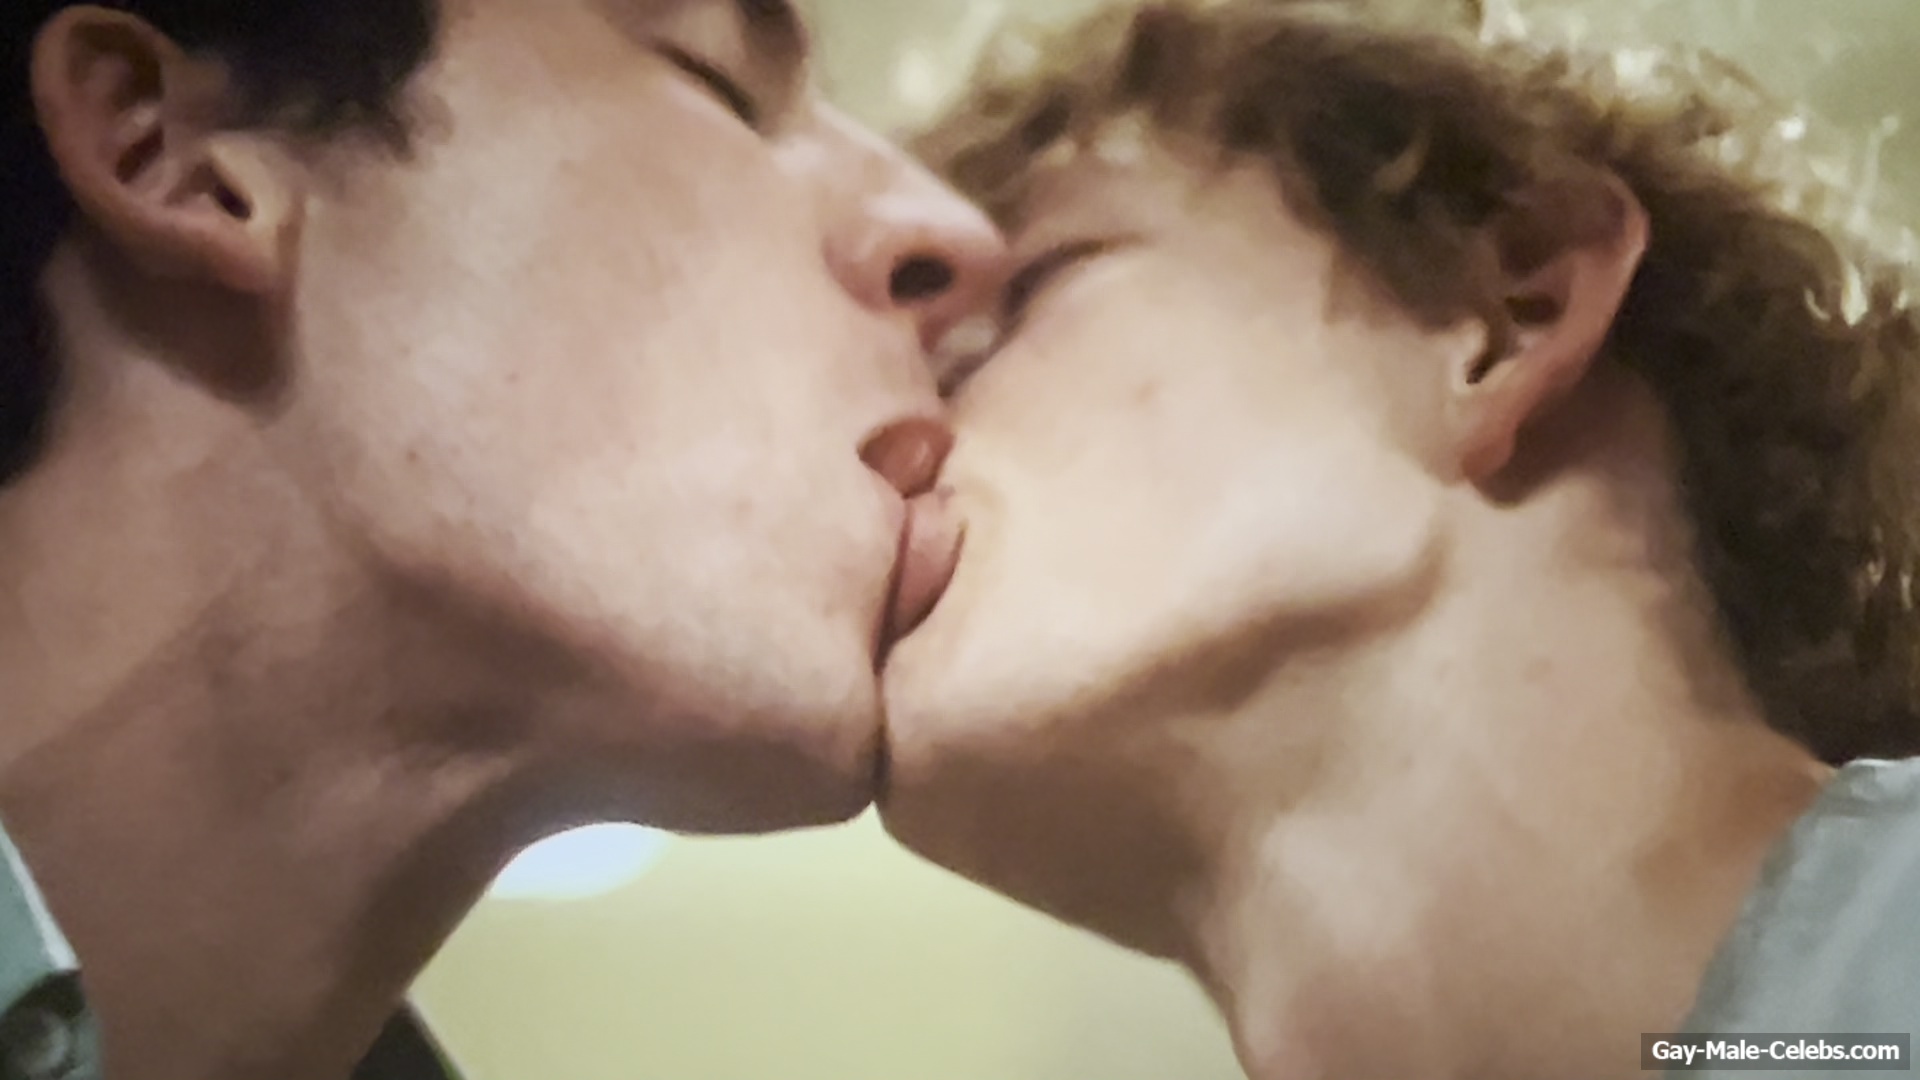 Josh O’Connor Nude And Erotic Gay Videos